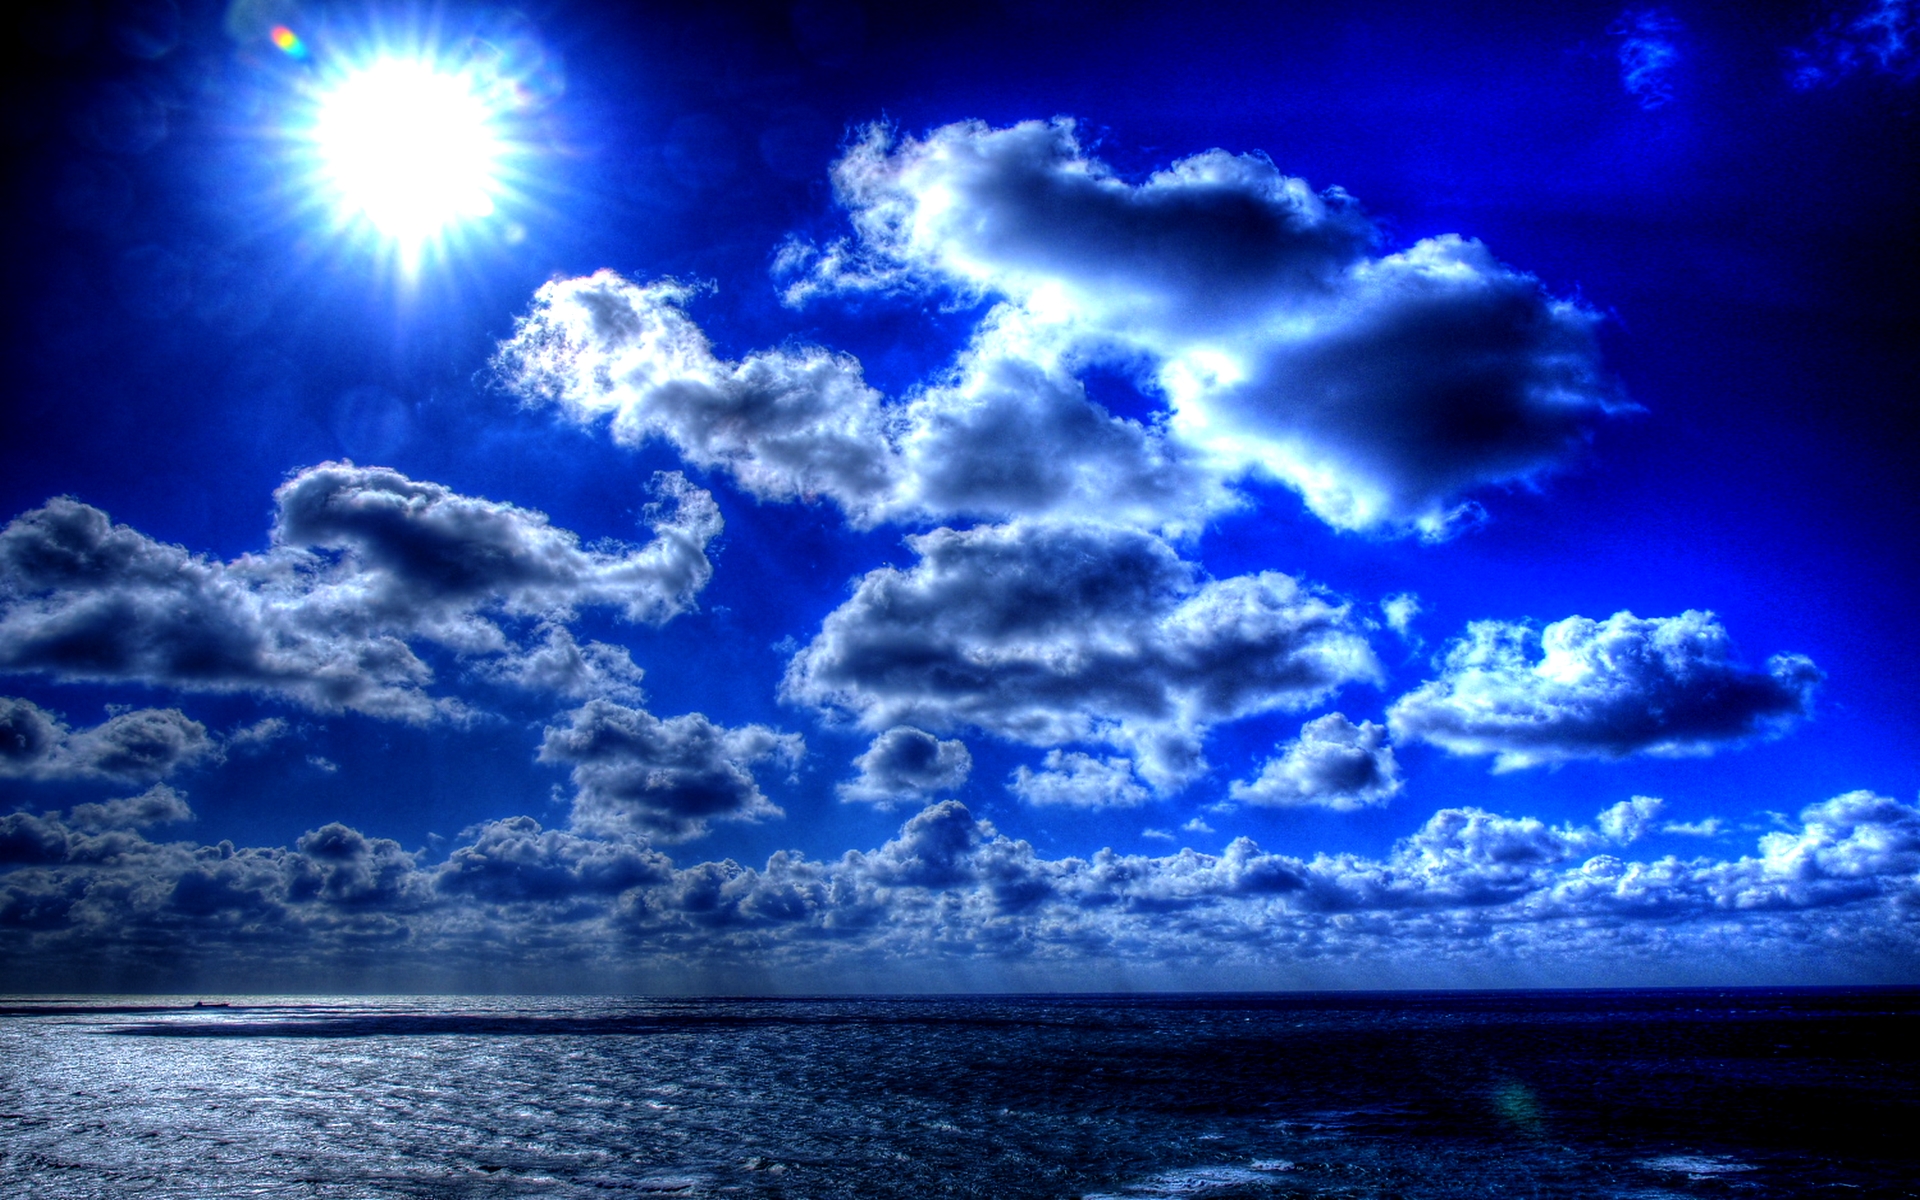 Скачать обои бесплатно Небо, Море, Солнце, Облака, Горизонт, Океан, Синий, Земля/природа картинка на рабочий стол ПК